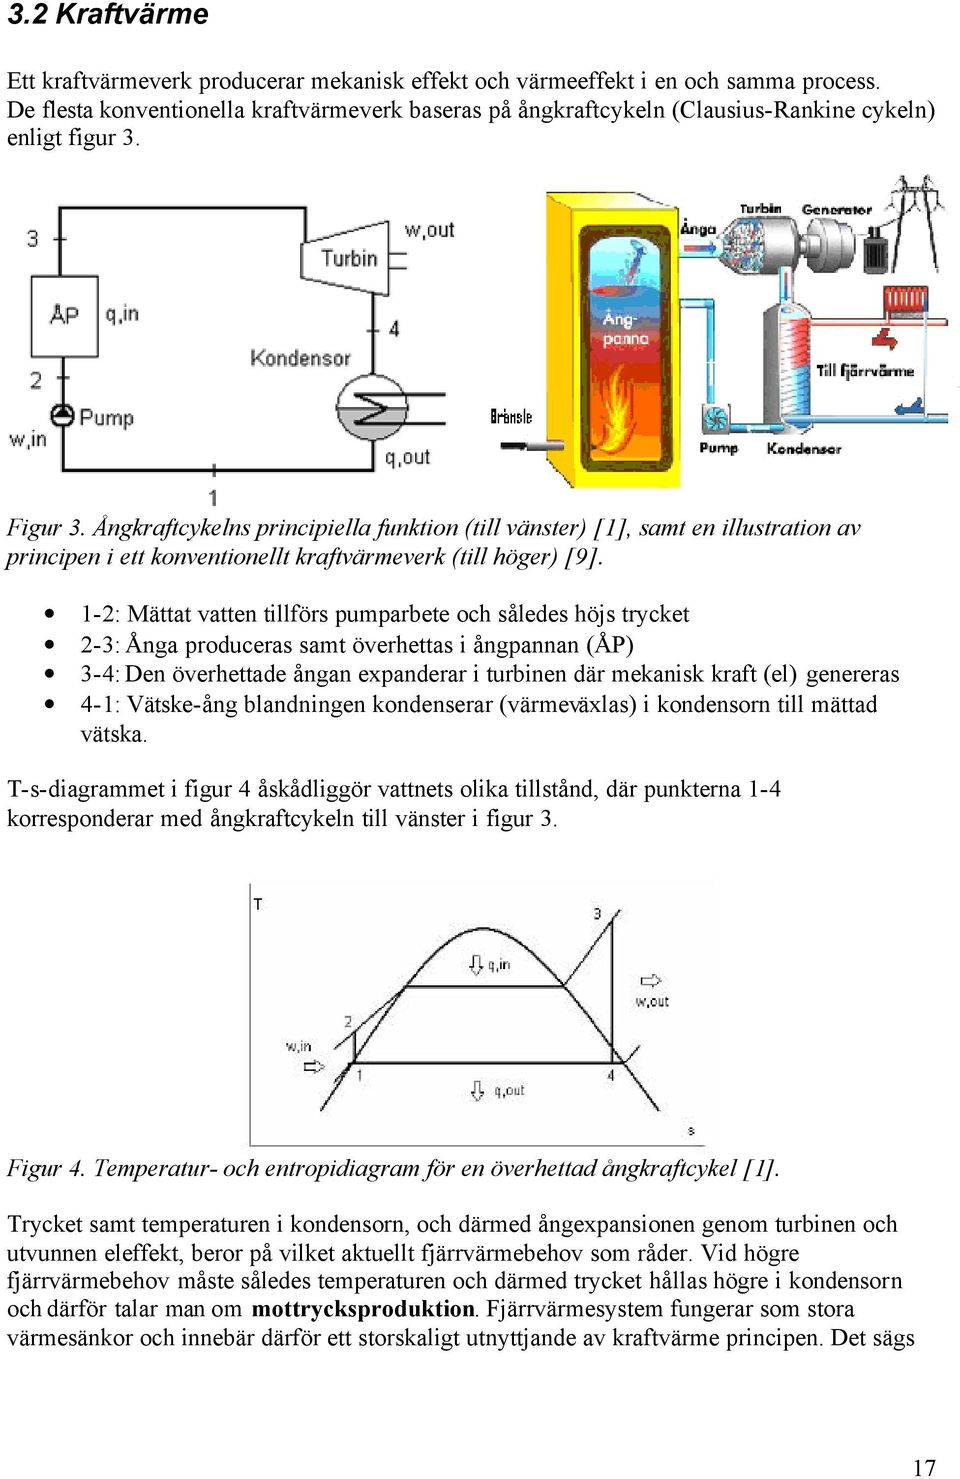 Ångkraftcykelns principiella funktion (till vänster) [1], samt en illustration av principen i ett konventionellt kraftvärmeverk (till höger) [9].